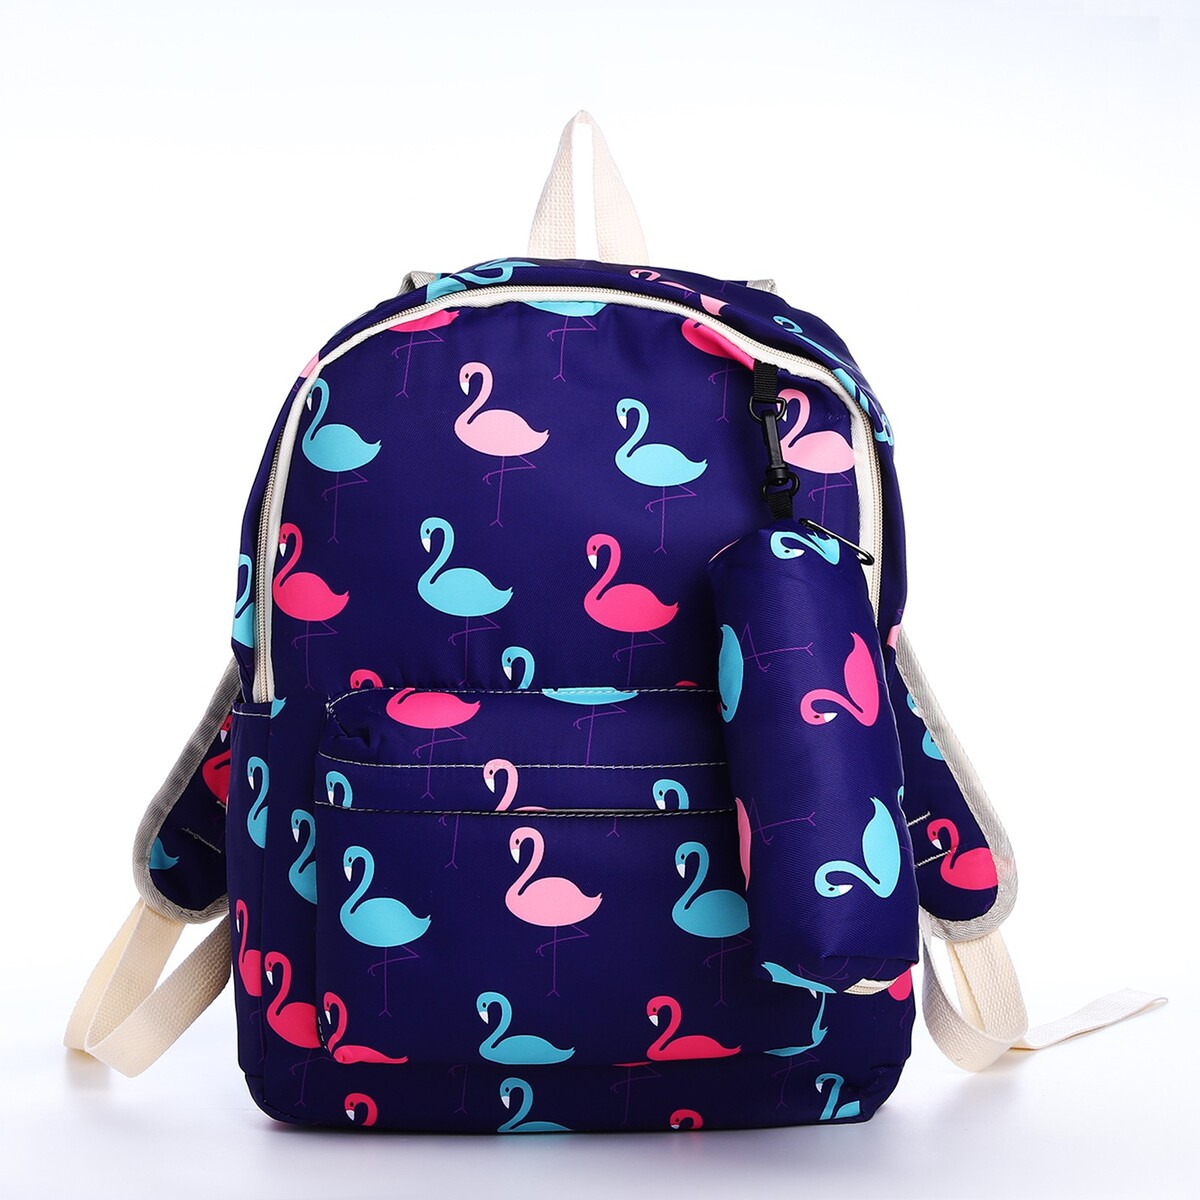 Рюкзак школьный из текстиля на молнии, 3 кармана, пенал, цвет фиолетовый рюкзак школьный из текстиля на молнии 3 кармана пенал белый разно ный